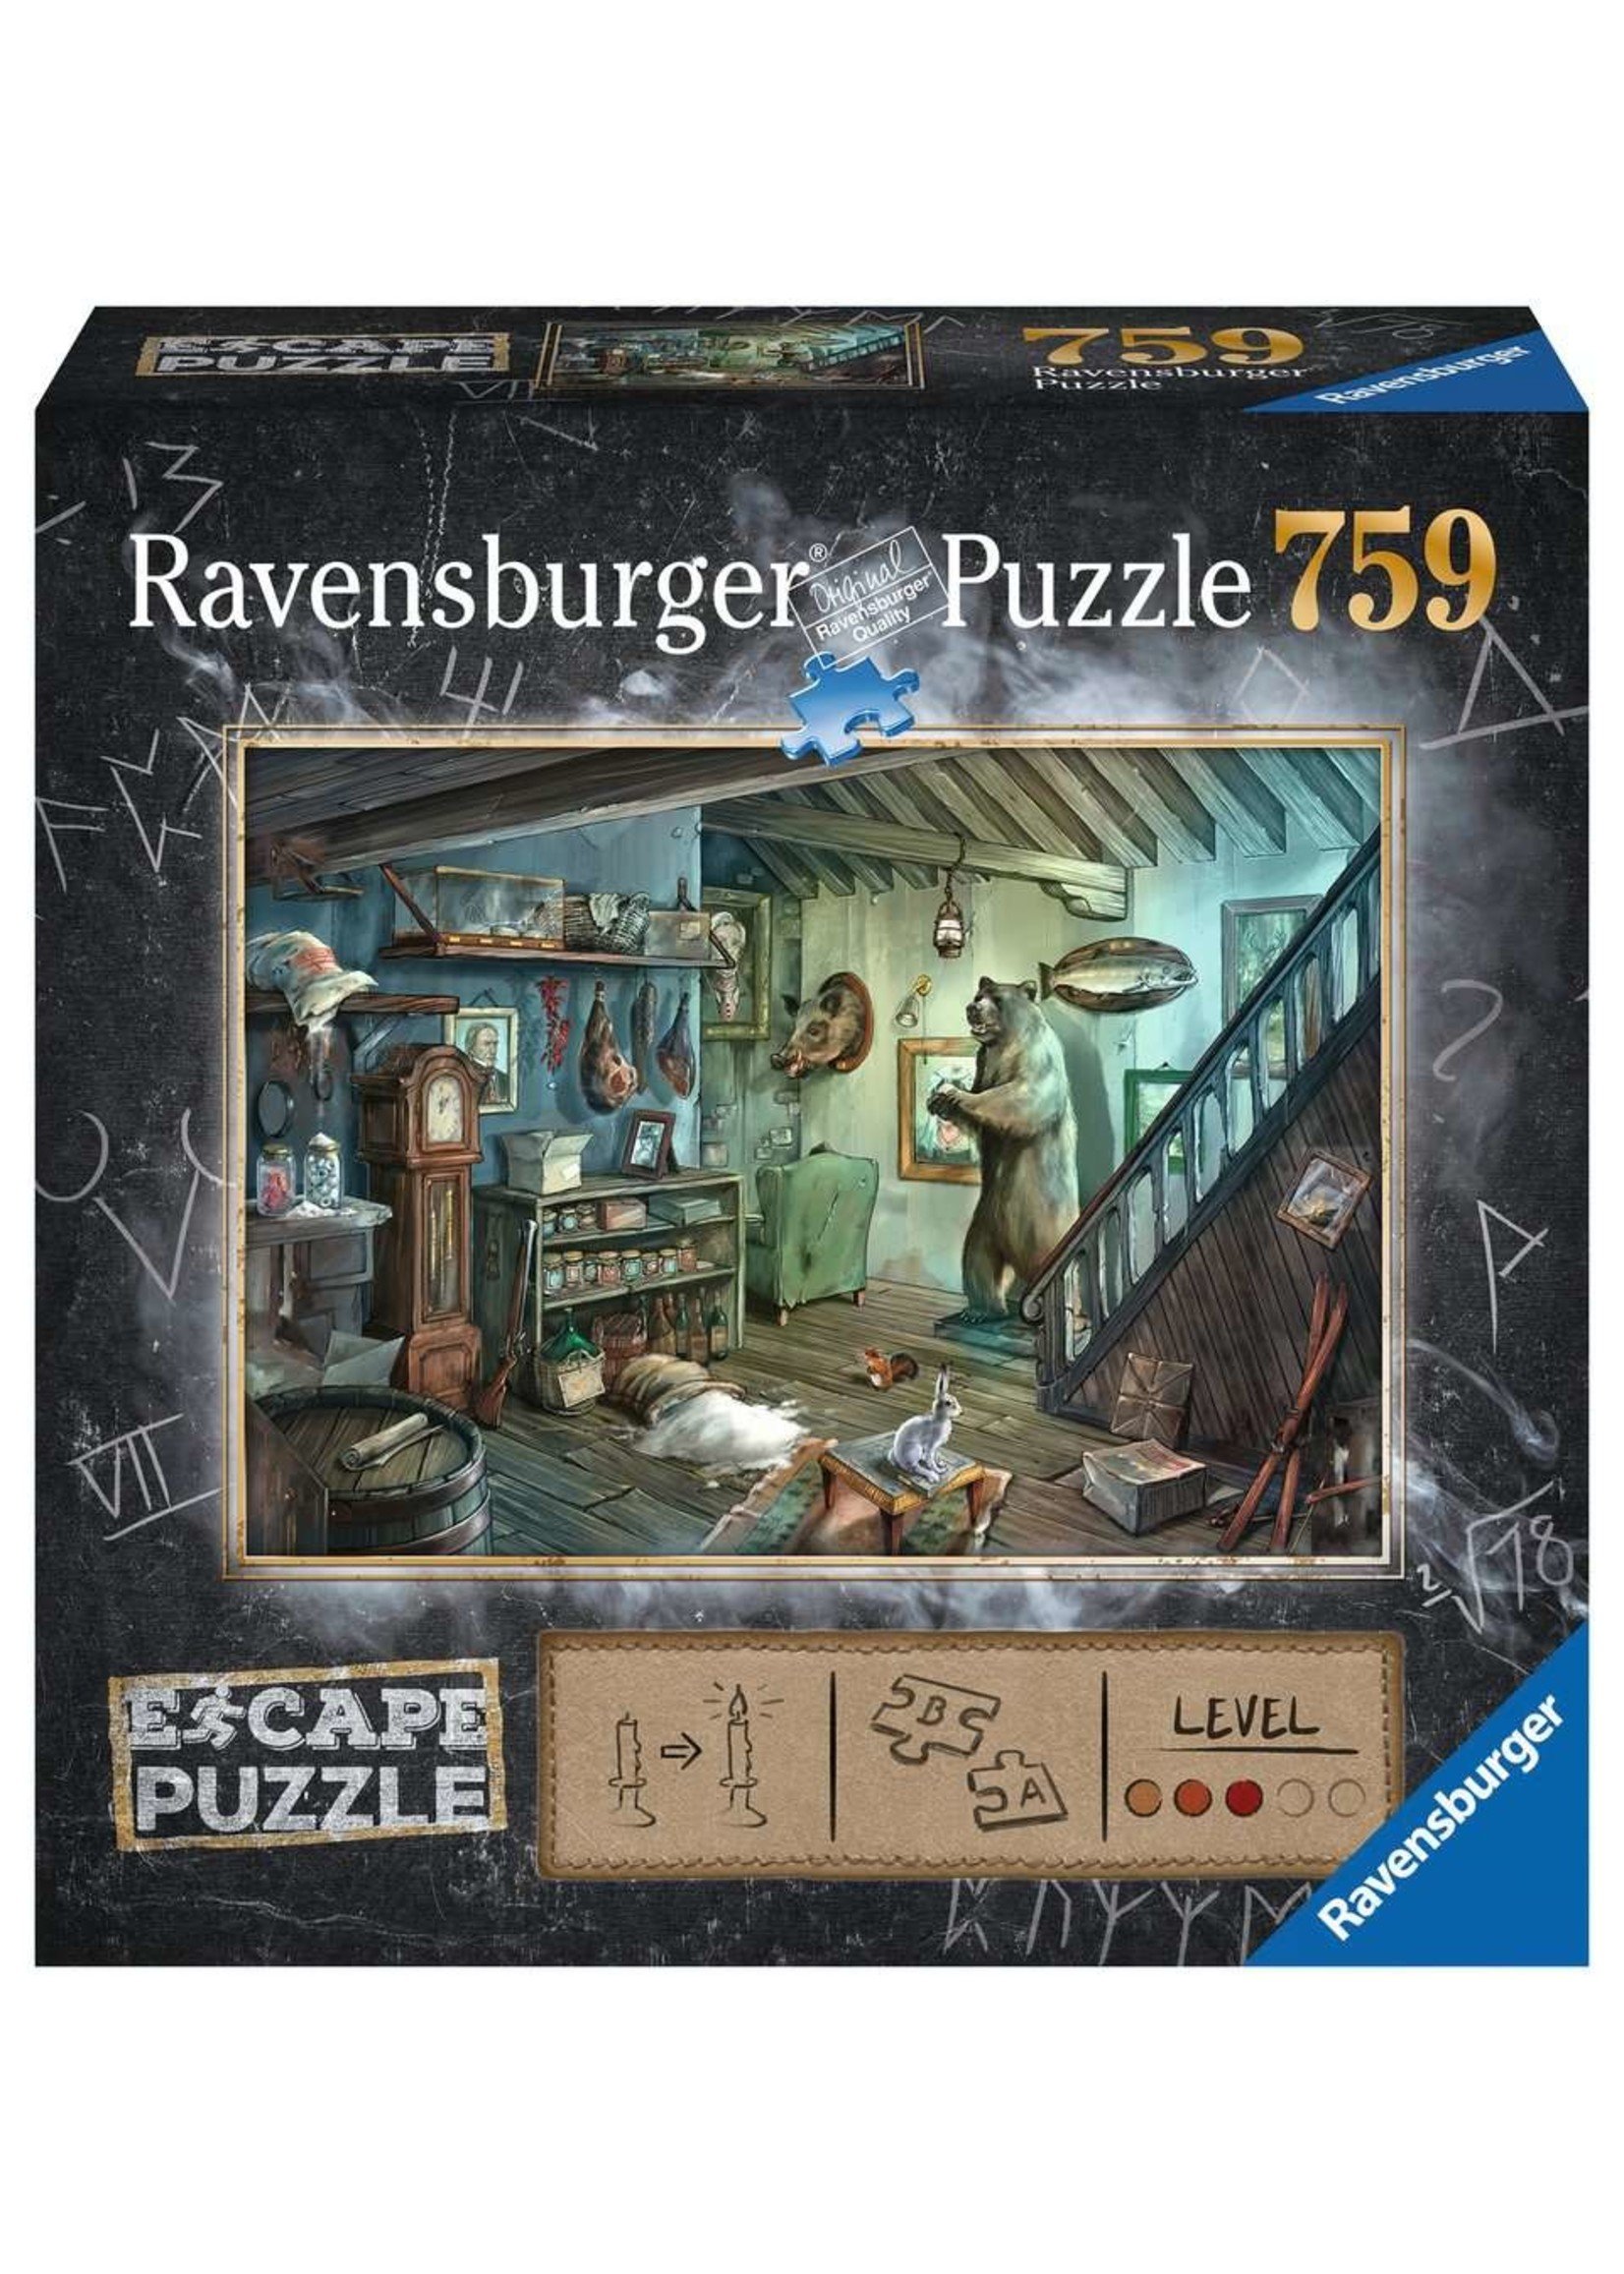 Ravensburger The Forbidden Basement - 759 Piece Escape Puzzle